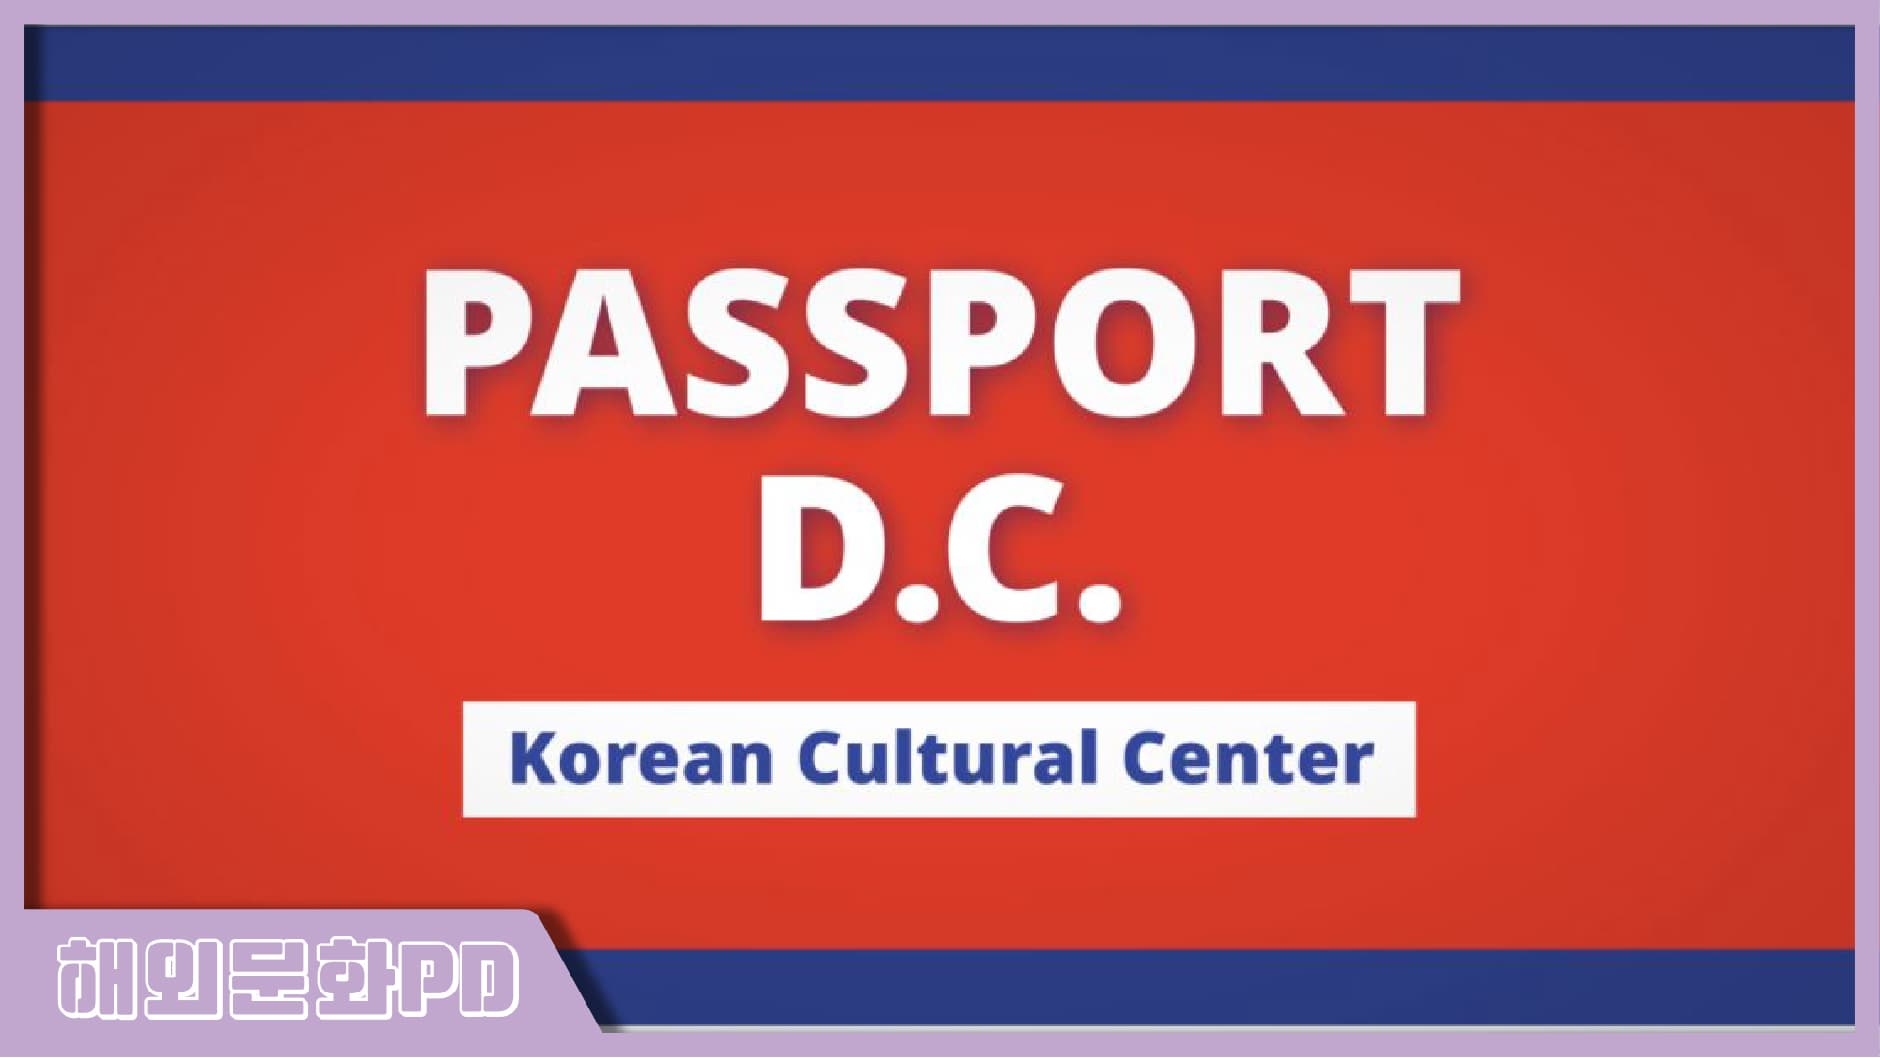 [워싱턴/해외문화PD] "Open Embassy" Passport DC at Korean Cultural Center 인기 폭발! 워싱턴 문화원 개방행사